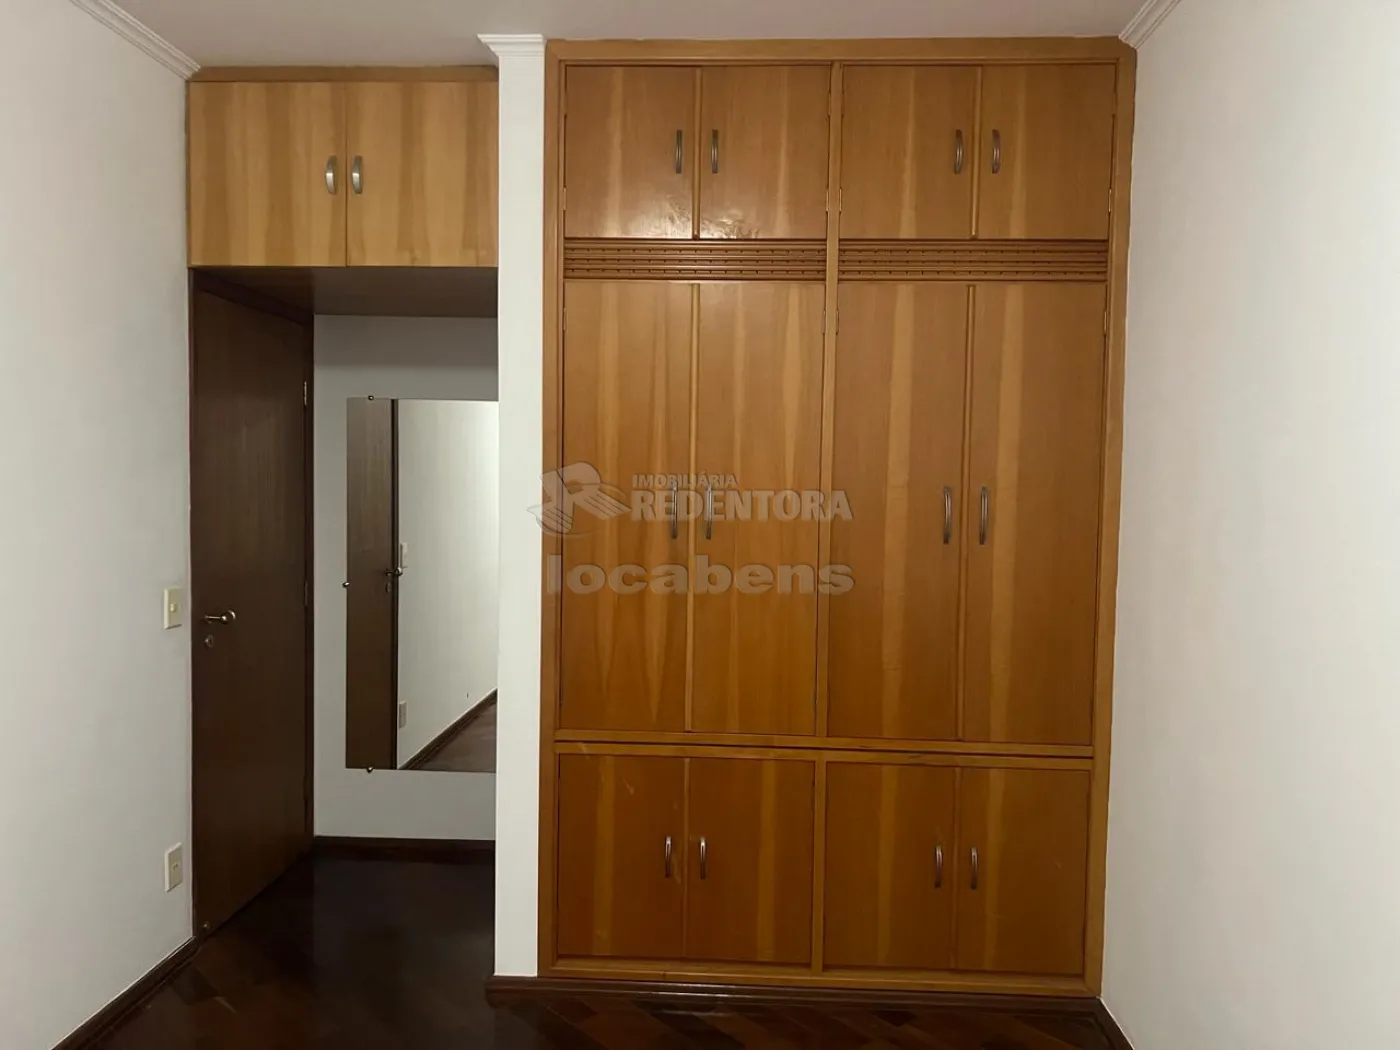 Comprar Apartamento / Padrão em São José do Rio Preto R$ 700.000,00 - Foto 34